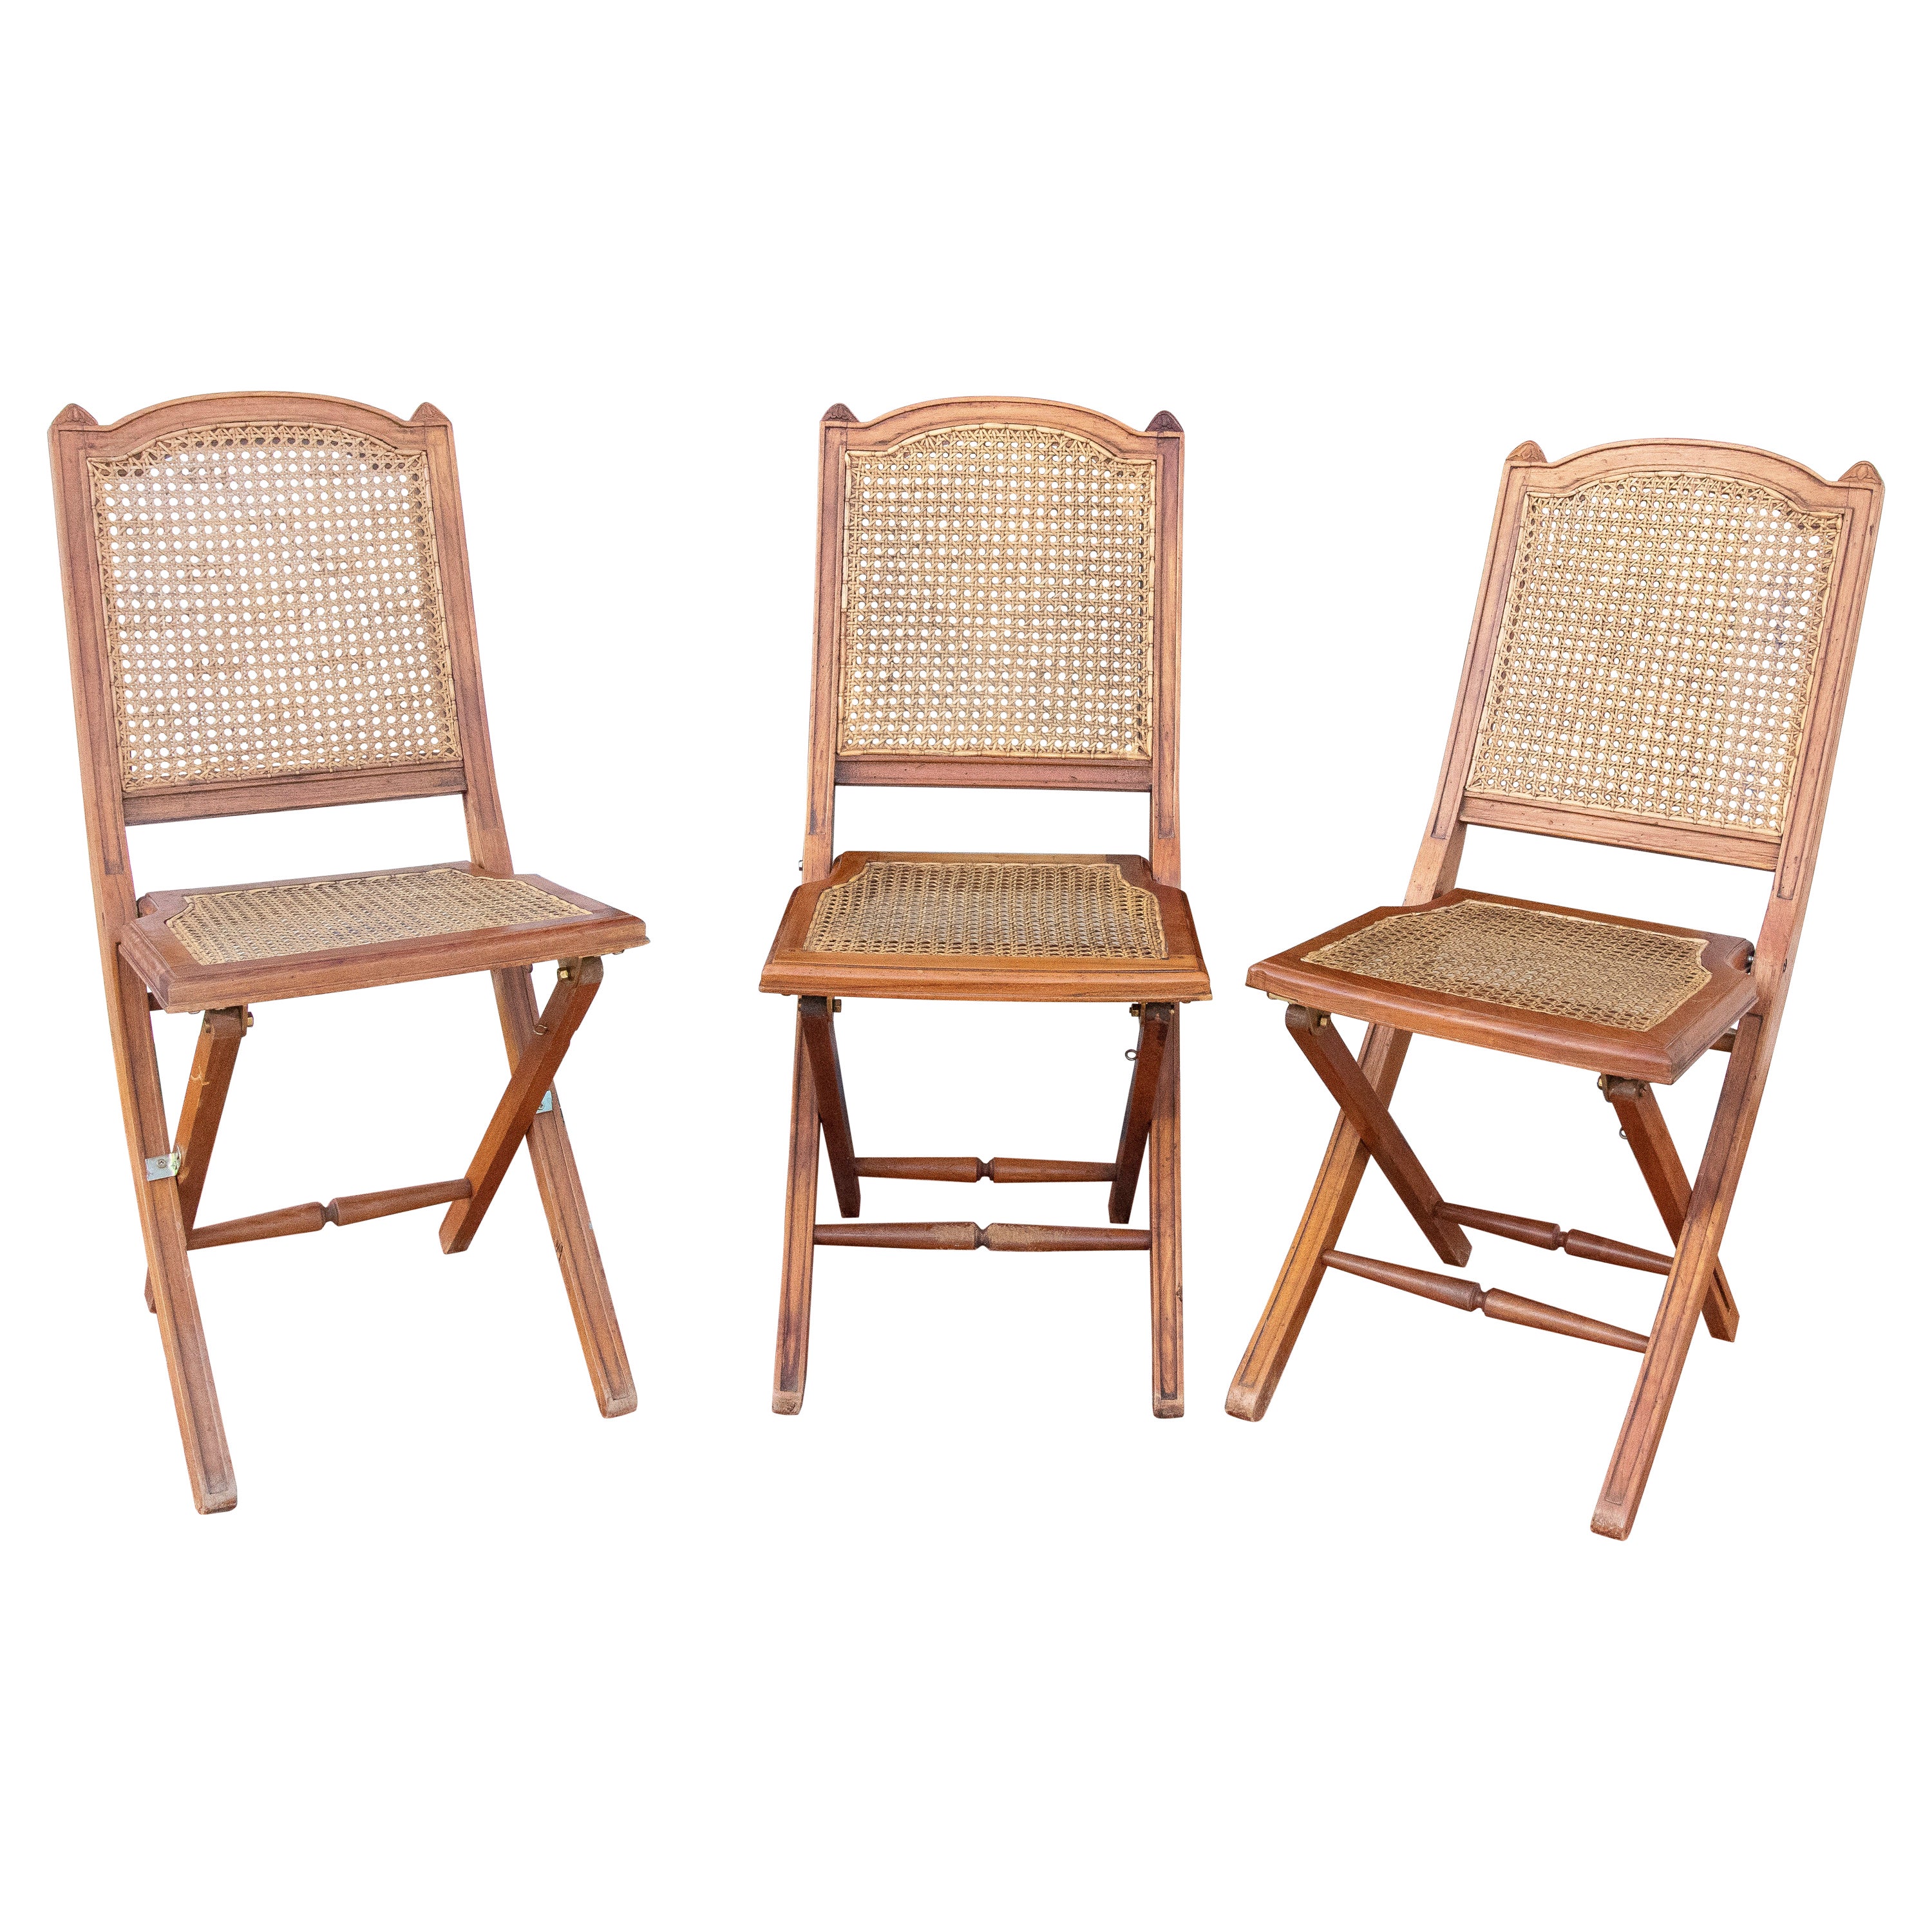 Ensemble de trois chaises pliantes en bois des années 1970 avec dossier et maille d'assise